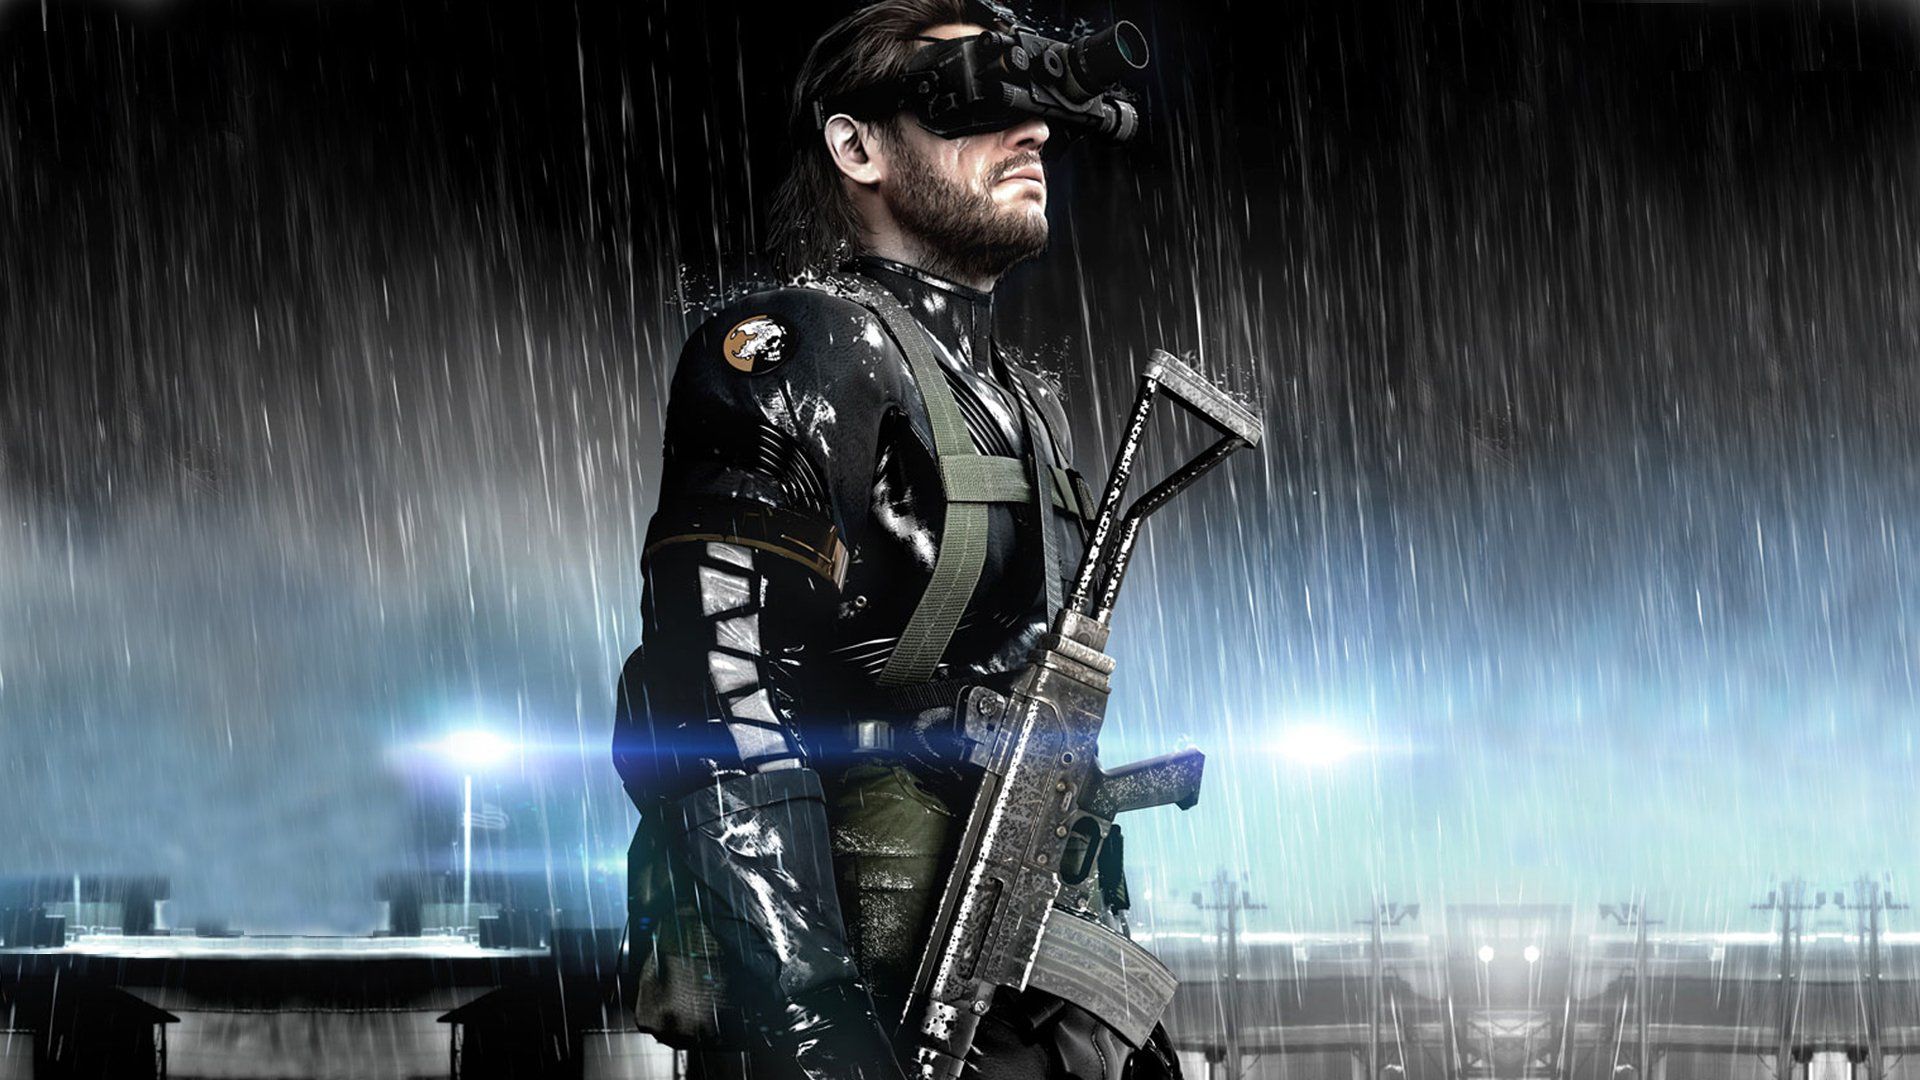 La replica del podcast su Metal Gear disponibile su Gamesurf